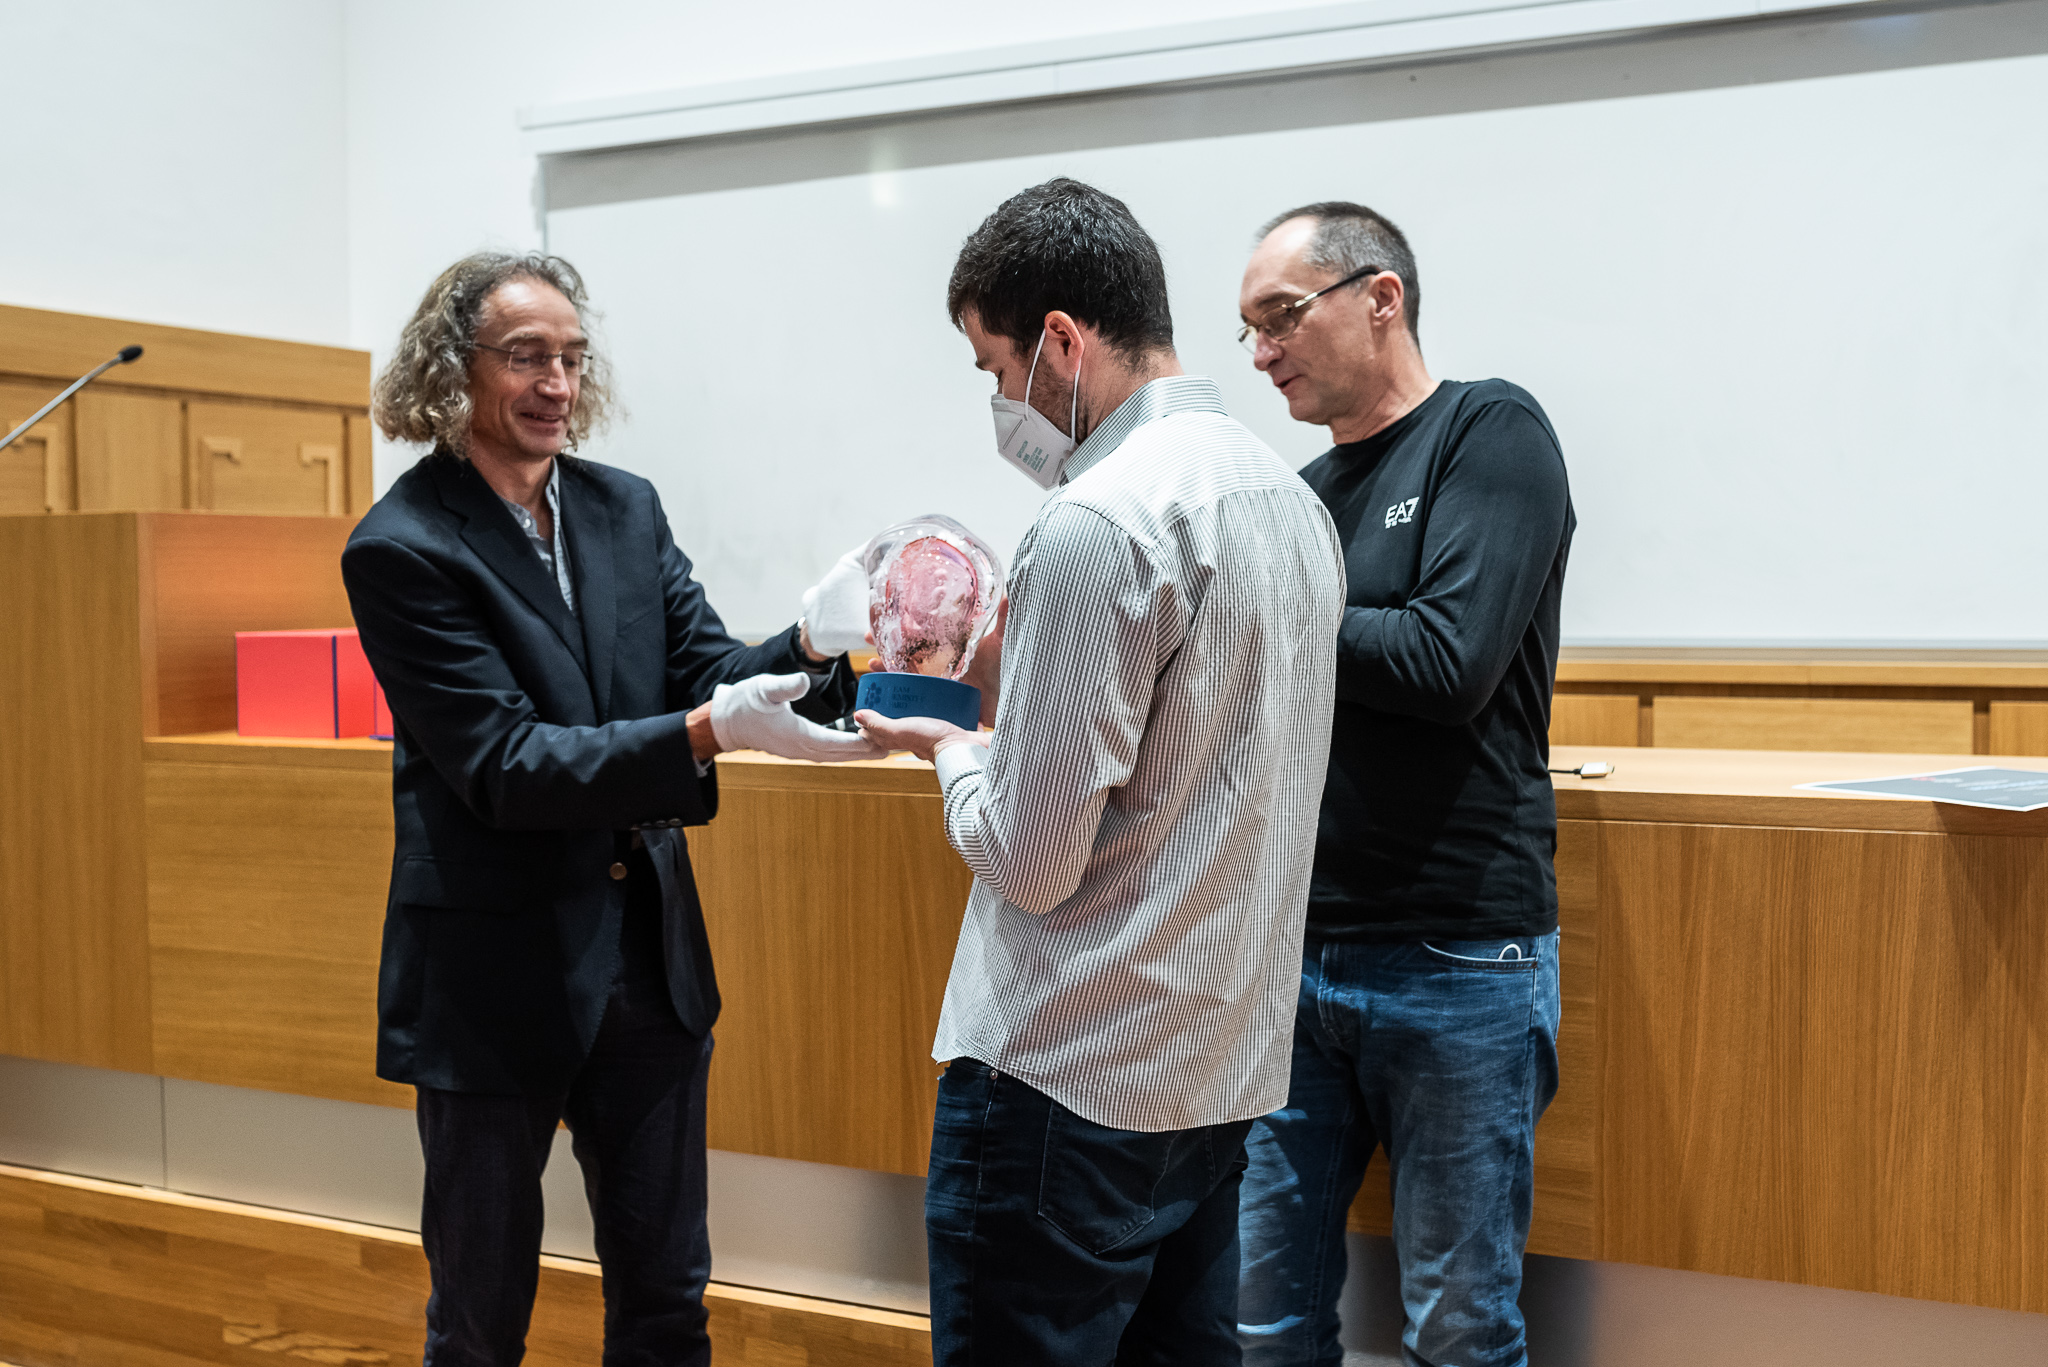 Cenu Dream Chemistry Award za rok 2021 obdržel Jarad Mason z Harvardovy univerzity za projekt léčba hypoxie mikroporézní vodou (Foto: Tomáš Belloň / ÚOCHB)